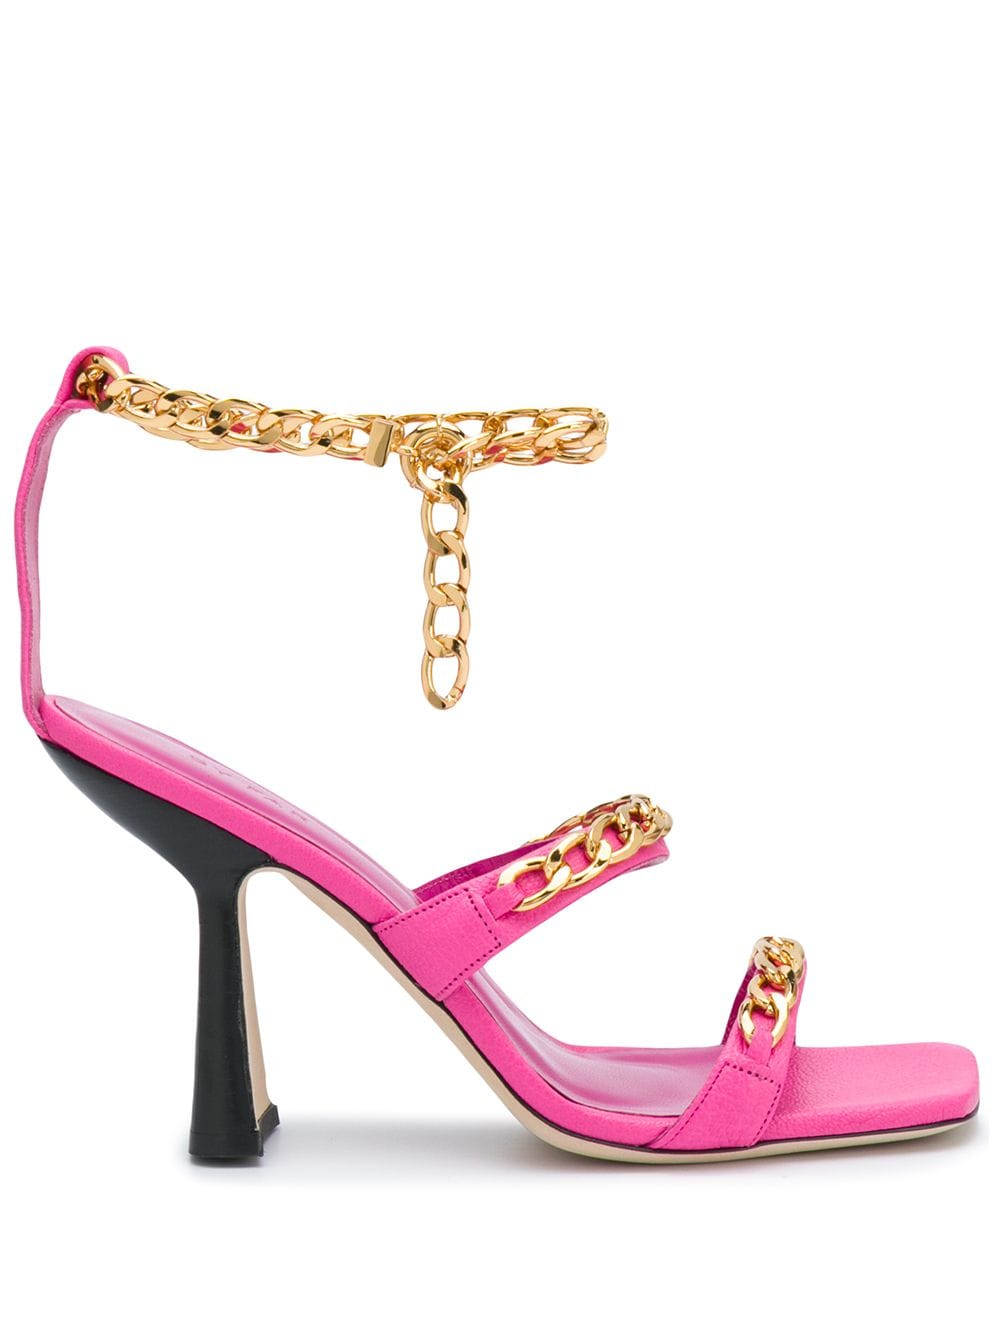 BY FAR Gina sandals - Pink von BY FAR